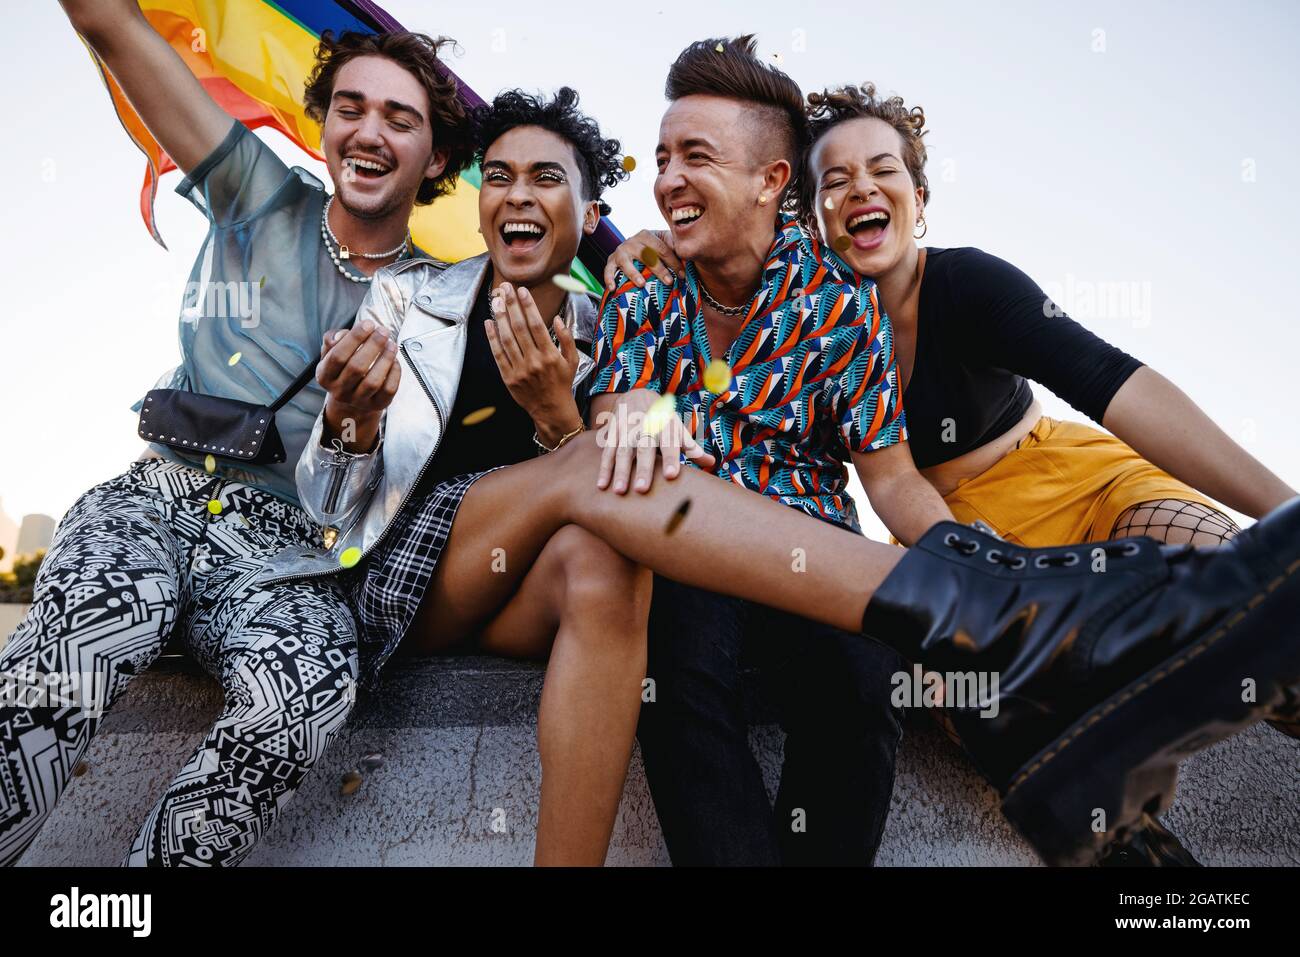 Junge Menschen feiern Stolz, während sie zusammen sitzen. Vier Mitglieder der LGBTQ+ Community lächeln fröhlich und heben die Pride-Flagge. Gruppe von Stockfoto